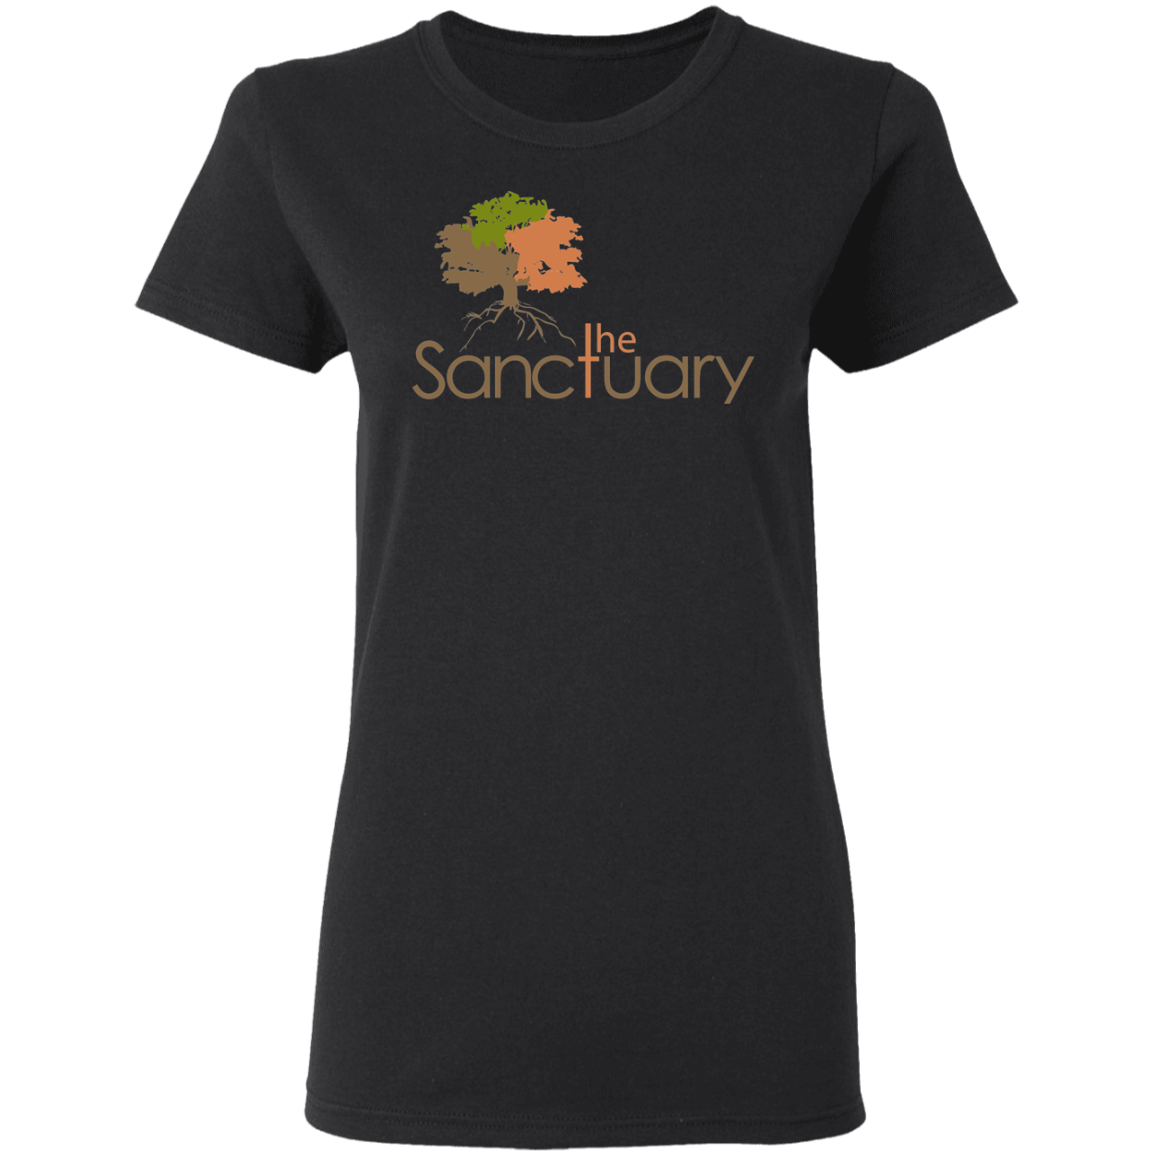 The Sanctuary - Ladies' T-Shirt